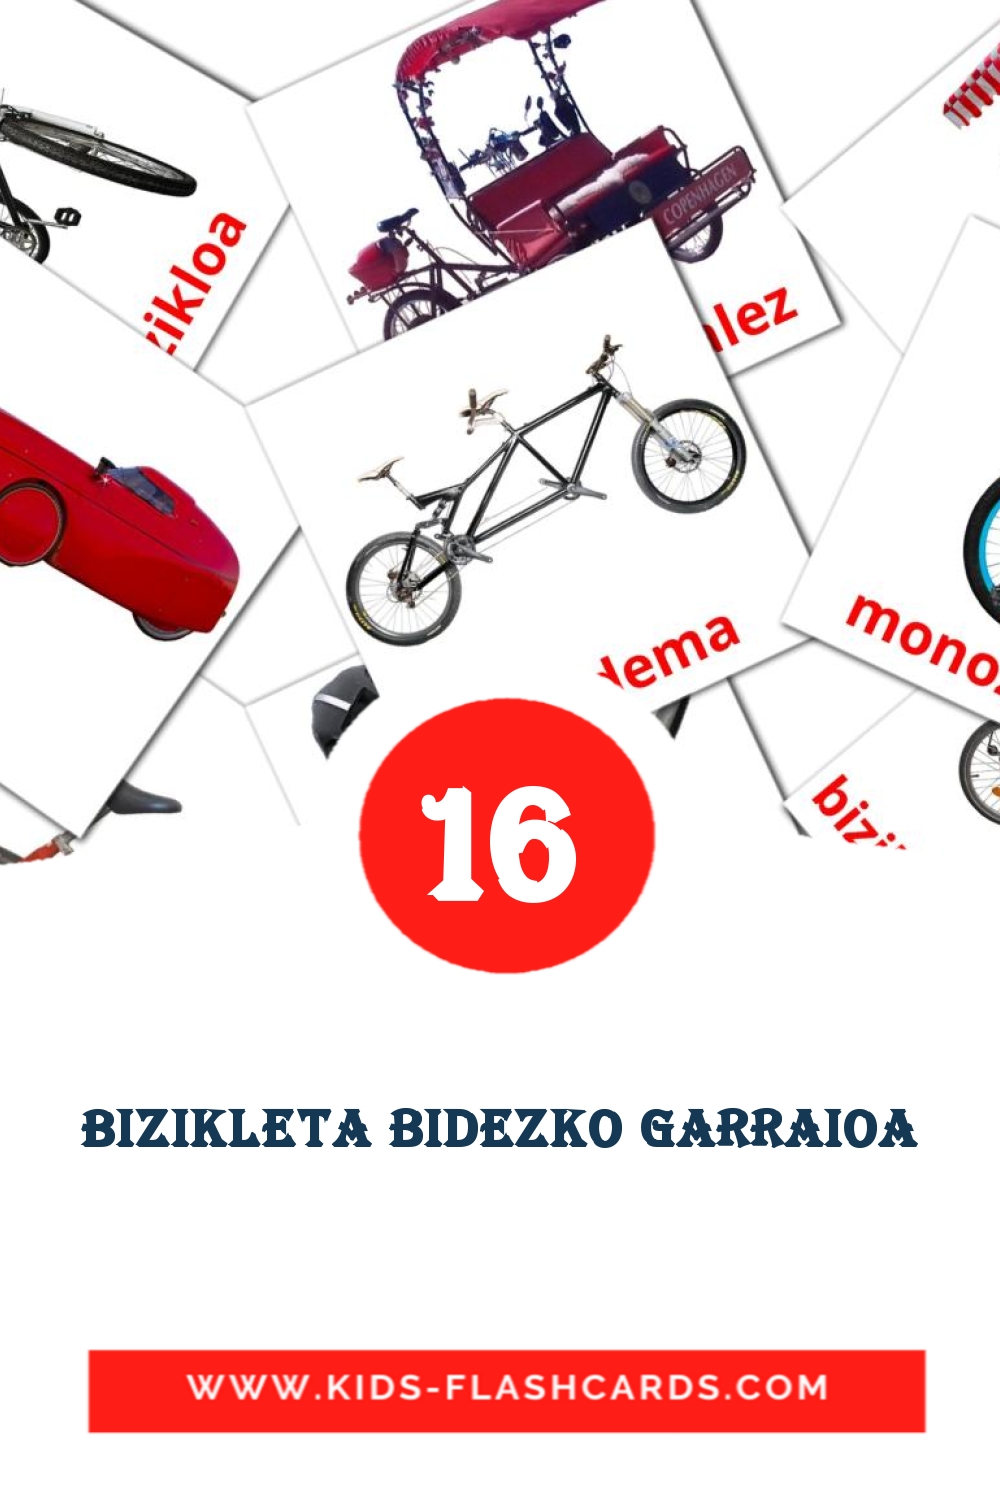 16 Bizikleta bidezko garraioa fotokaarten voor kleuters in het baskisch